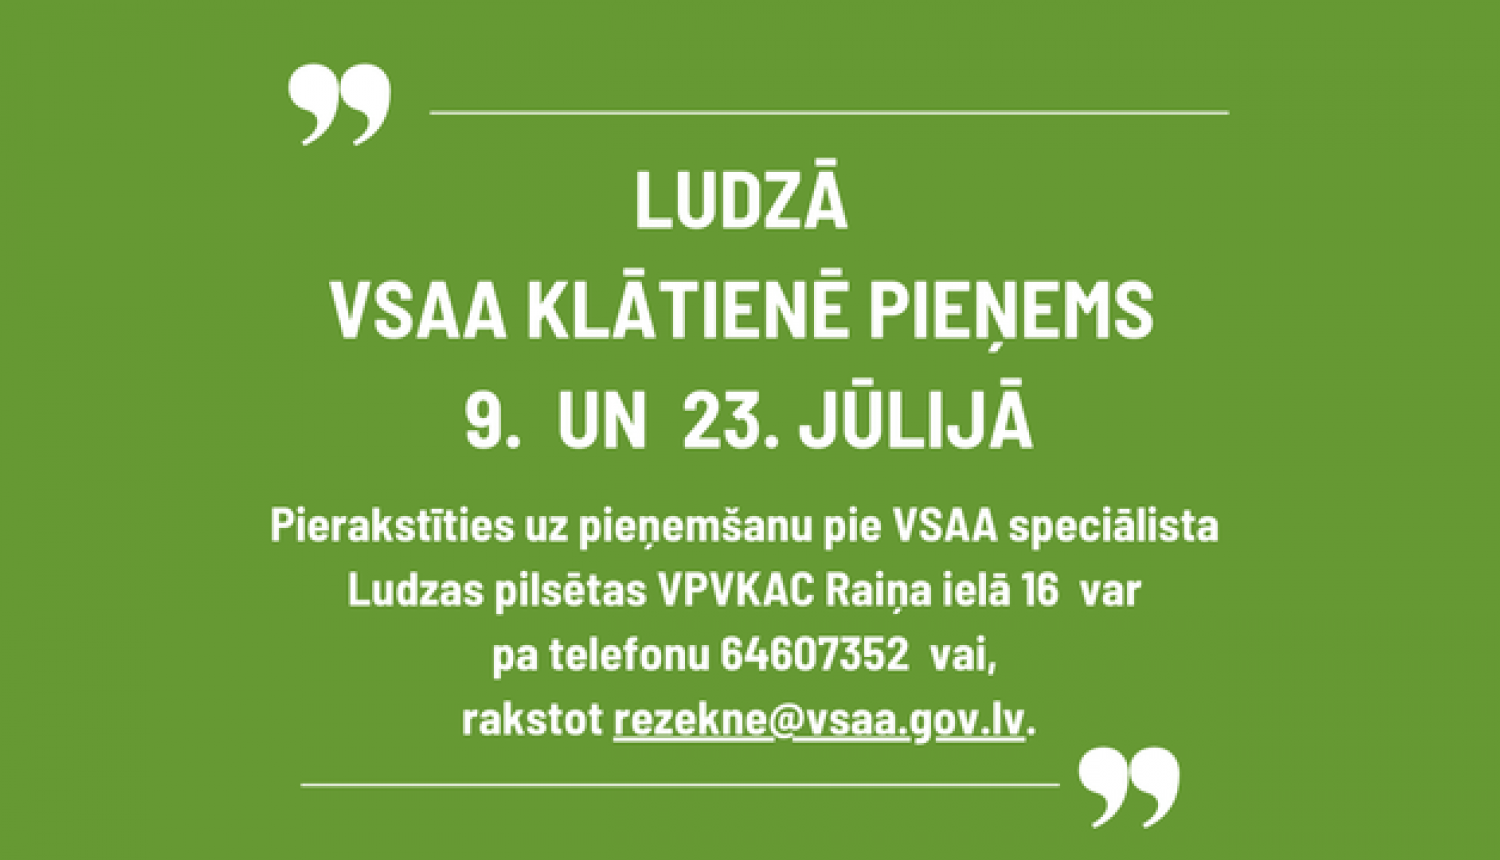 Uz zaļa fona teksts par VSAA klientu pieņemšanu Ludzā